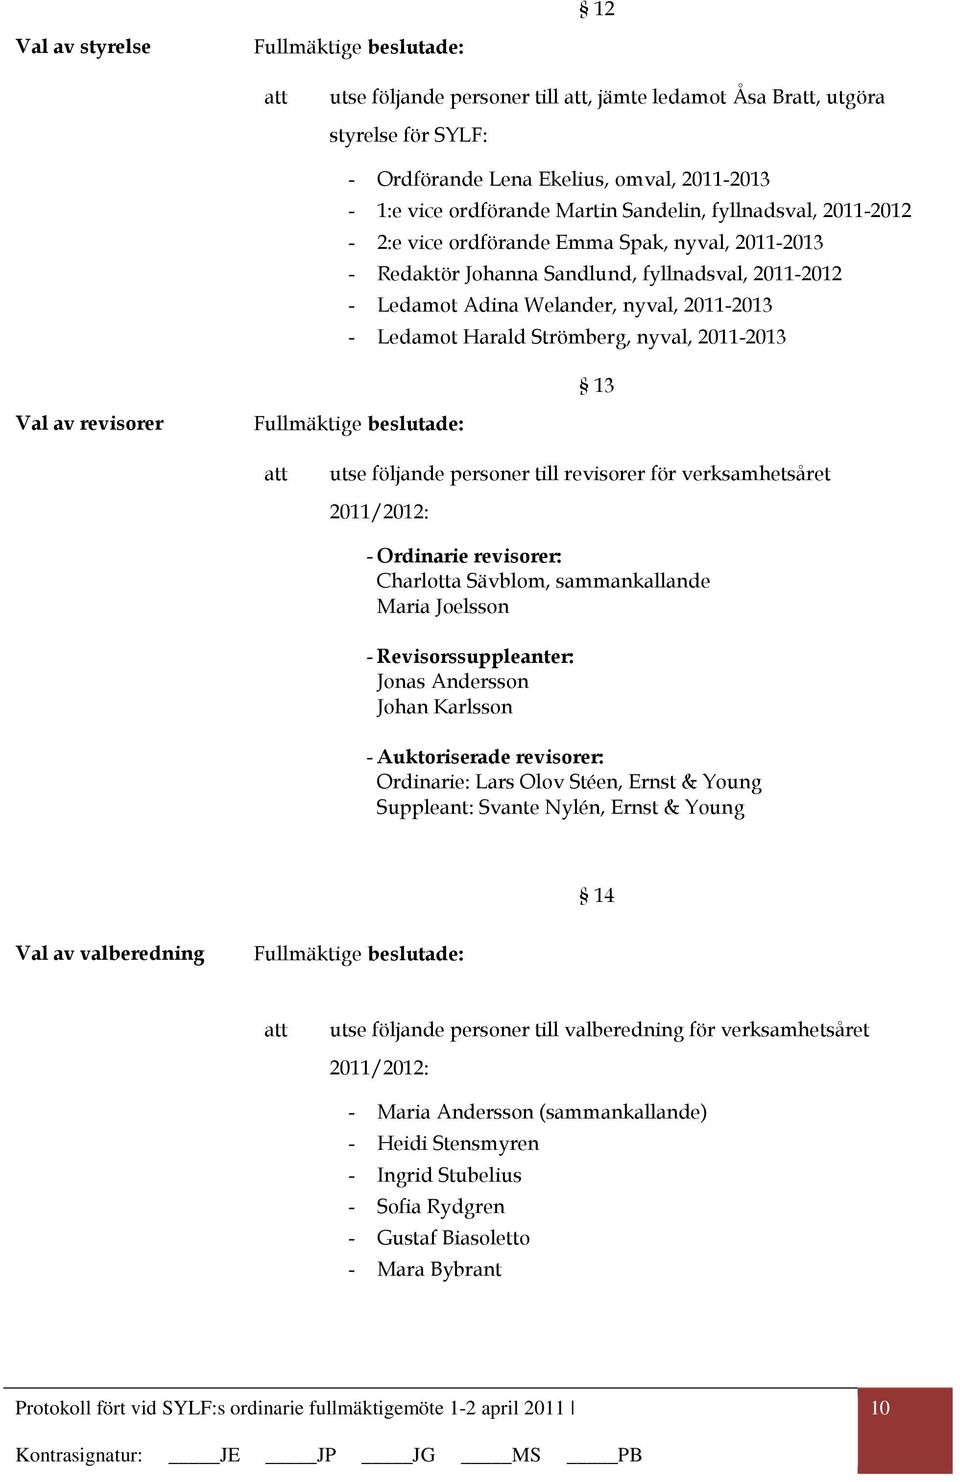 Strömberg, nyval, 2011-2013 13 Val av revisorer Fullmäktige beslutade: utse följande personer till revisorer för verksamhetsåret 2011/2012: - Ordinarie revisorer: Charlotta Sävblom, sammankallande